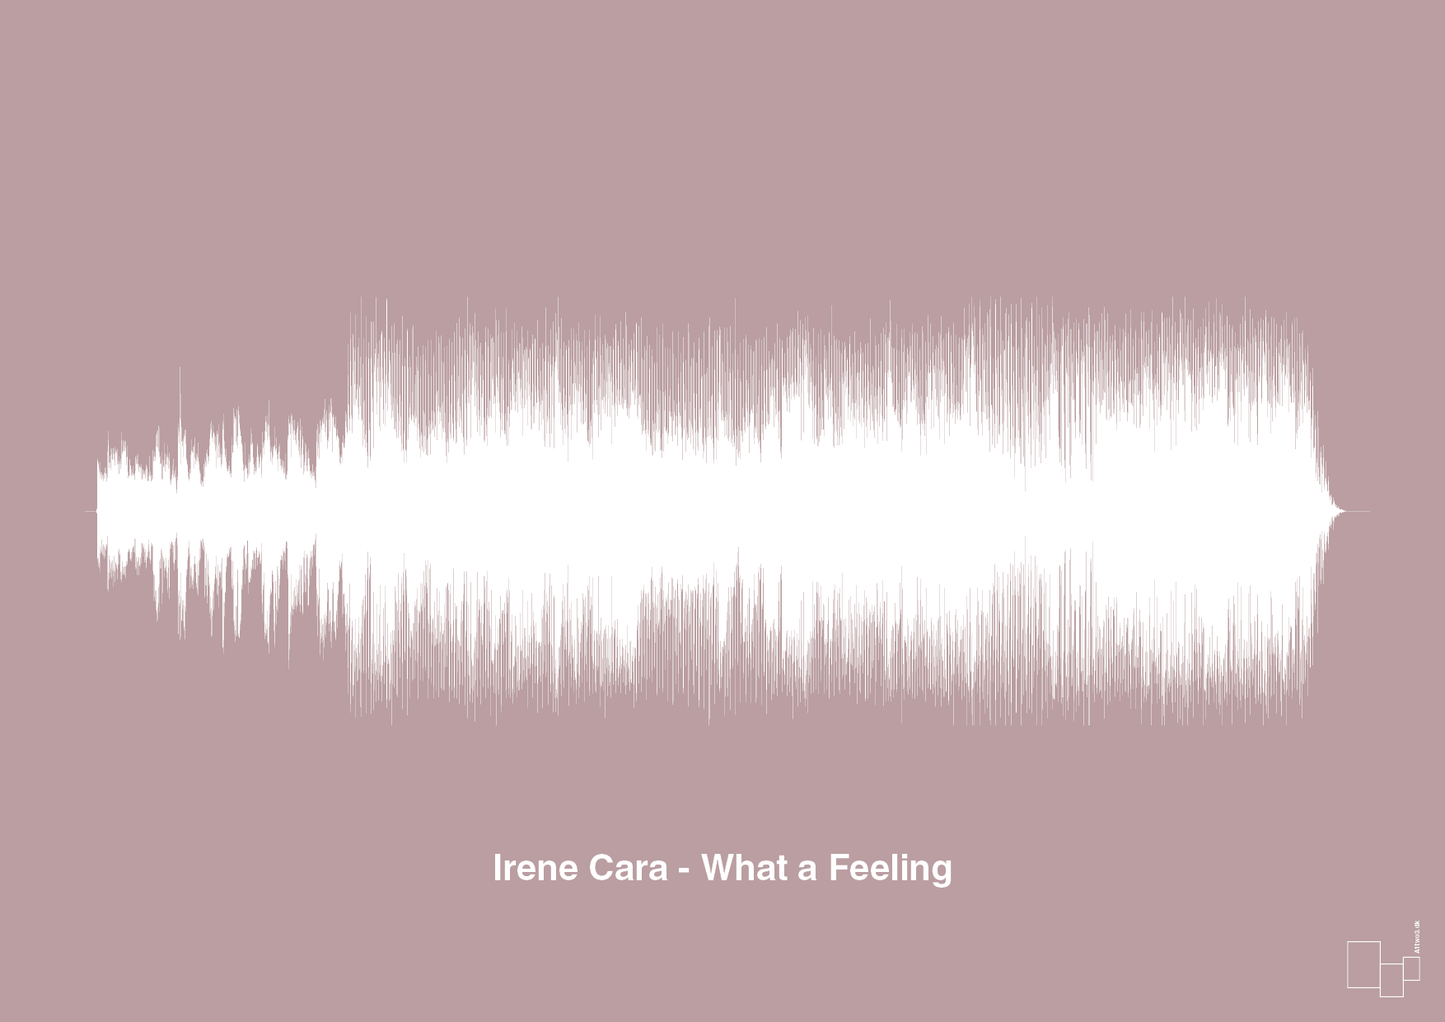 irene cara - what a feeling - Plakat med Musik i Light Rose